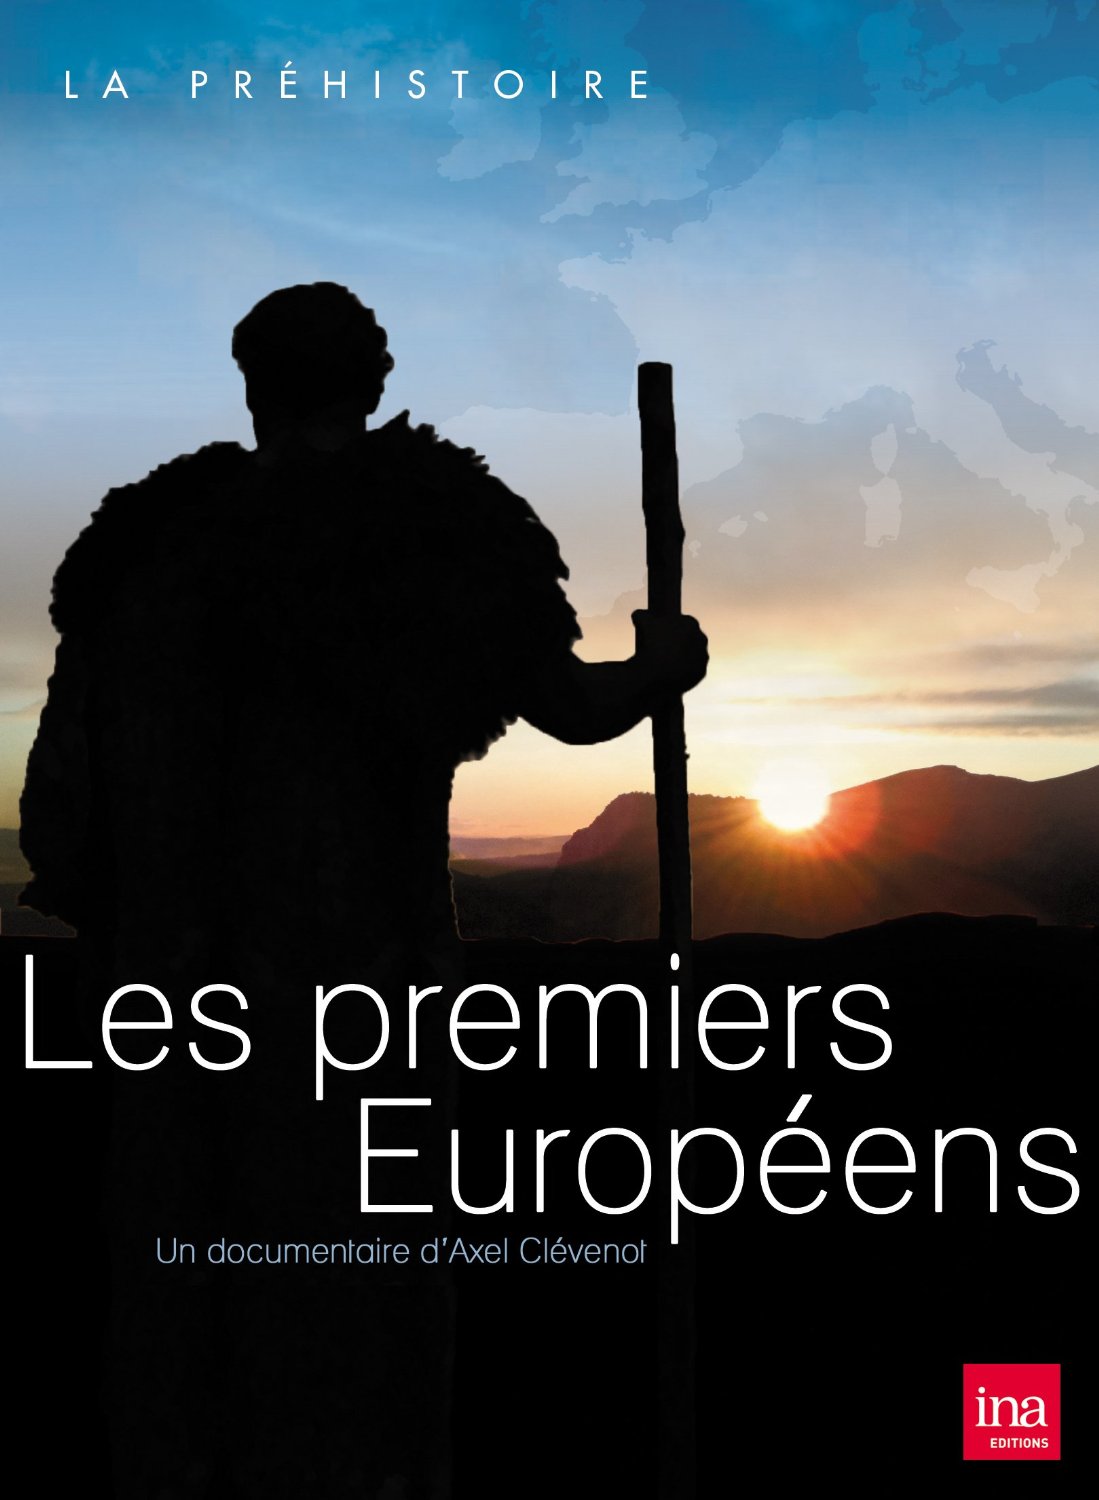 DVD - Les premiers européens, 2010.